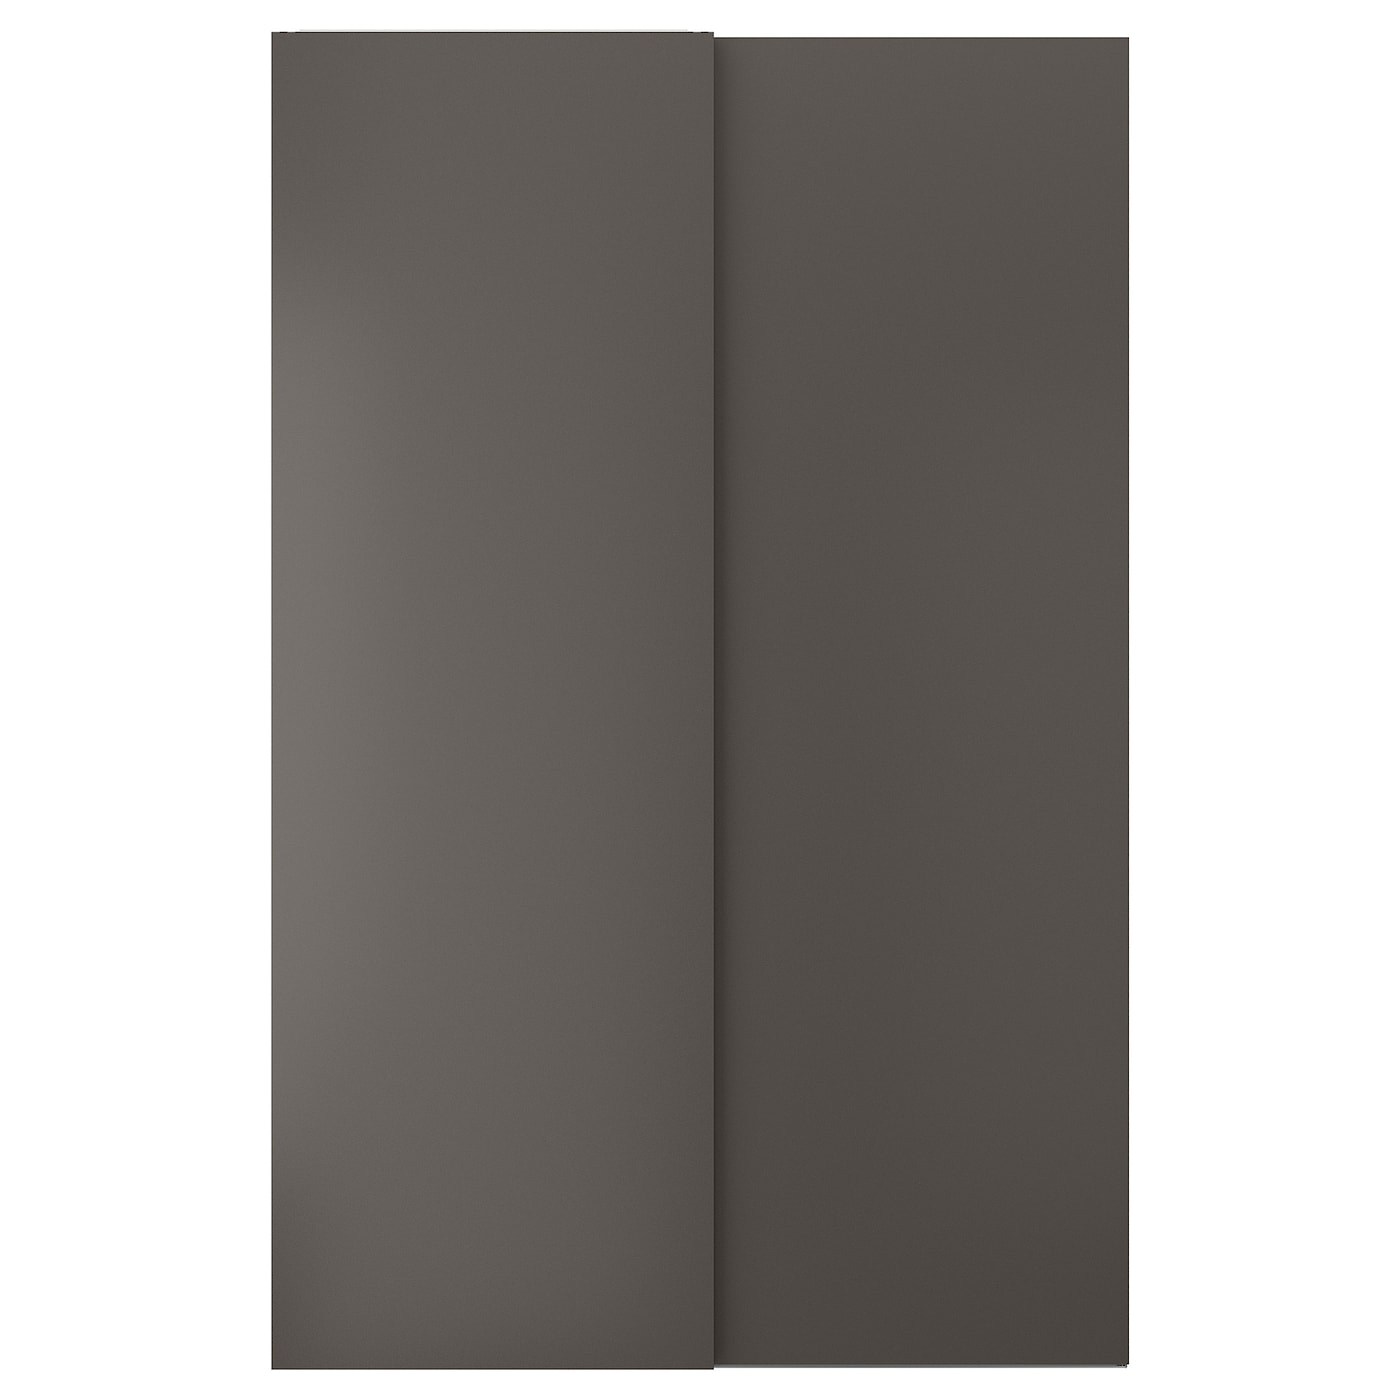 Пара рам раздвижных дверей - HASVIK IKEA/ ХАСВИК ИКЕА, 150х236 см, черный